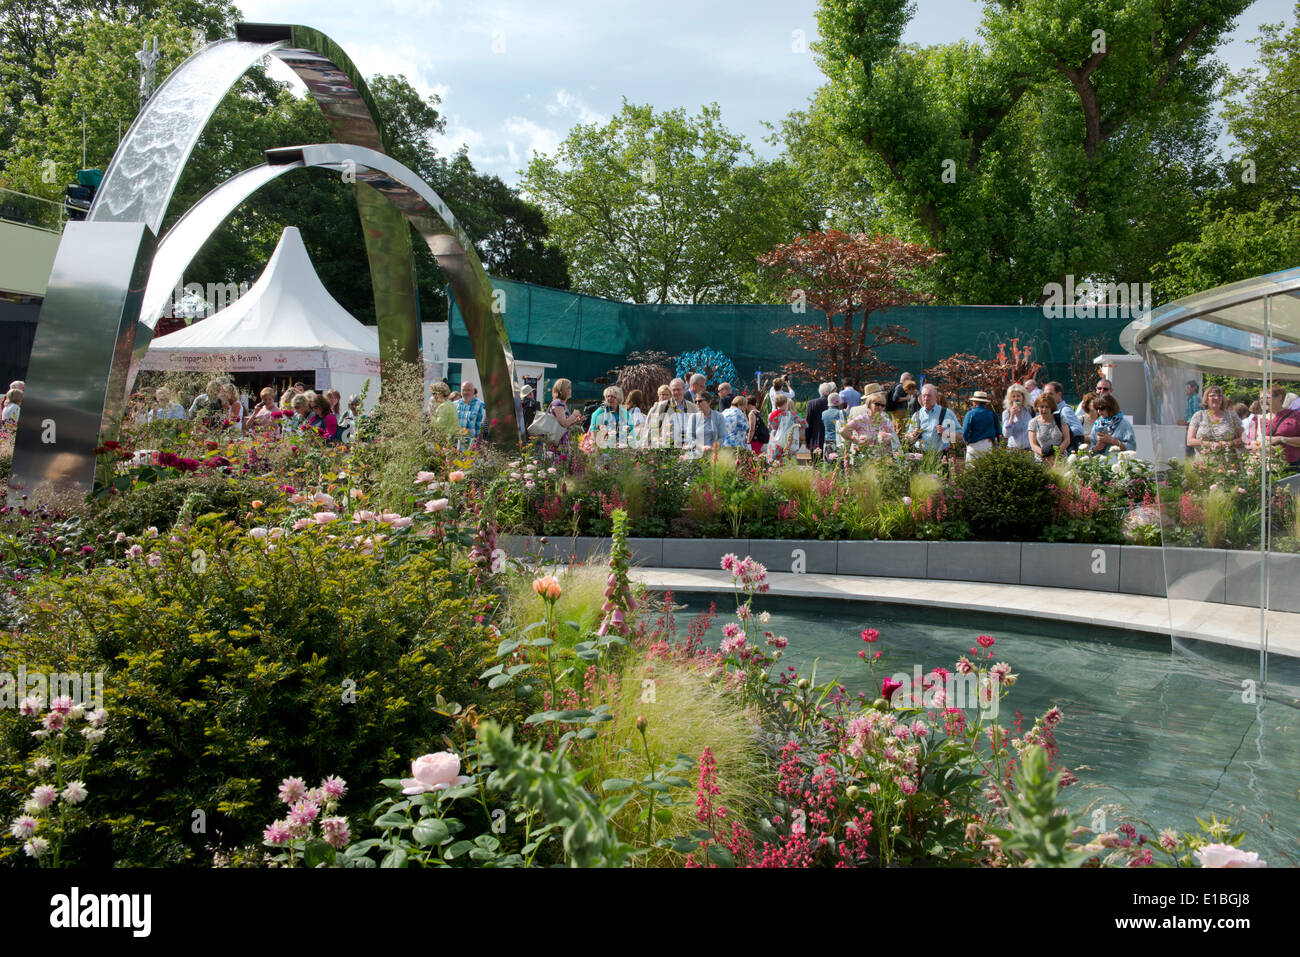 La folla intorno al positivamente Stoke-on-Trent al Chelsea Flower Show 2014, London, Regno Unito Foto Stock